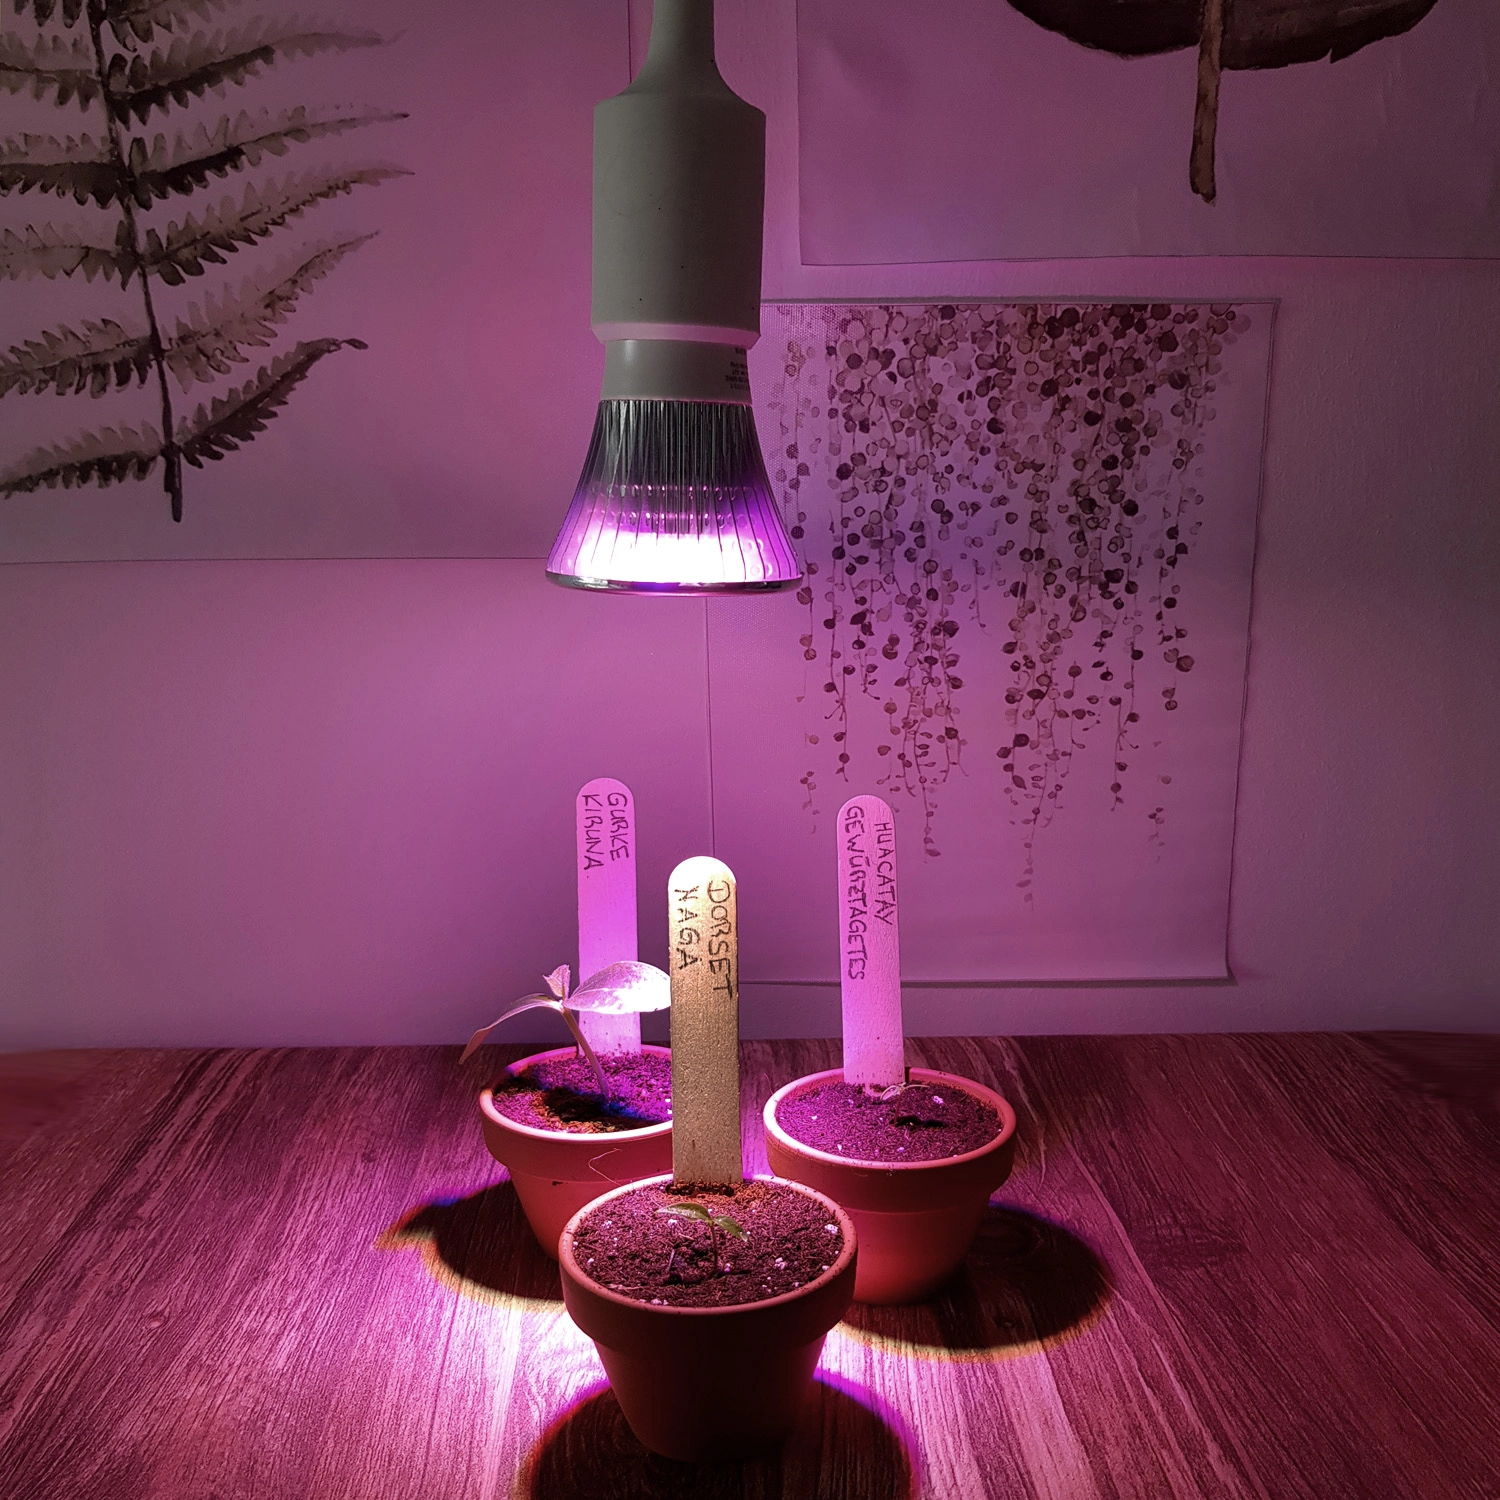 Lampe pour plantes LED Cultura 6 W / E27